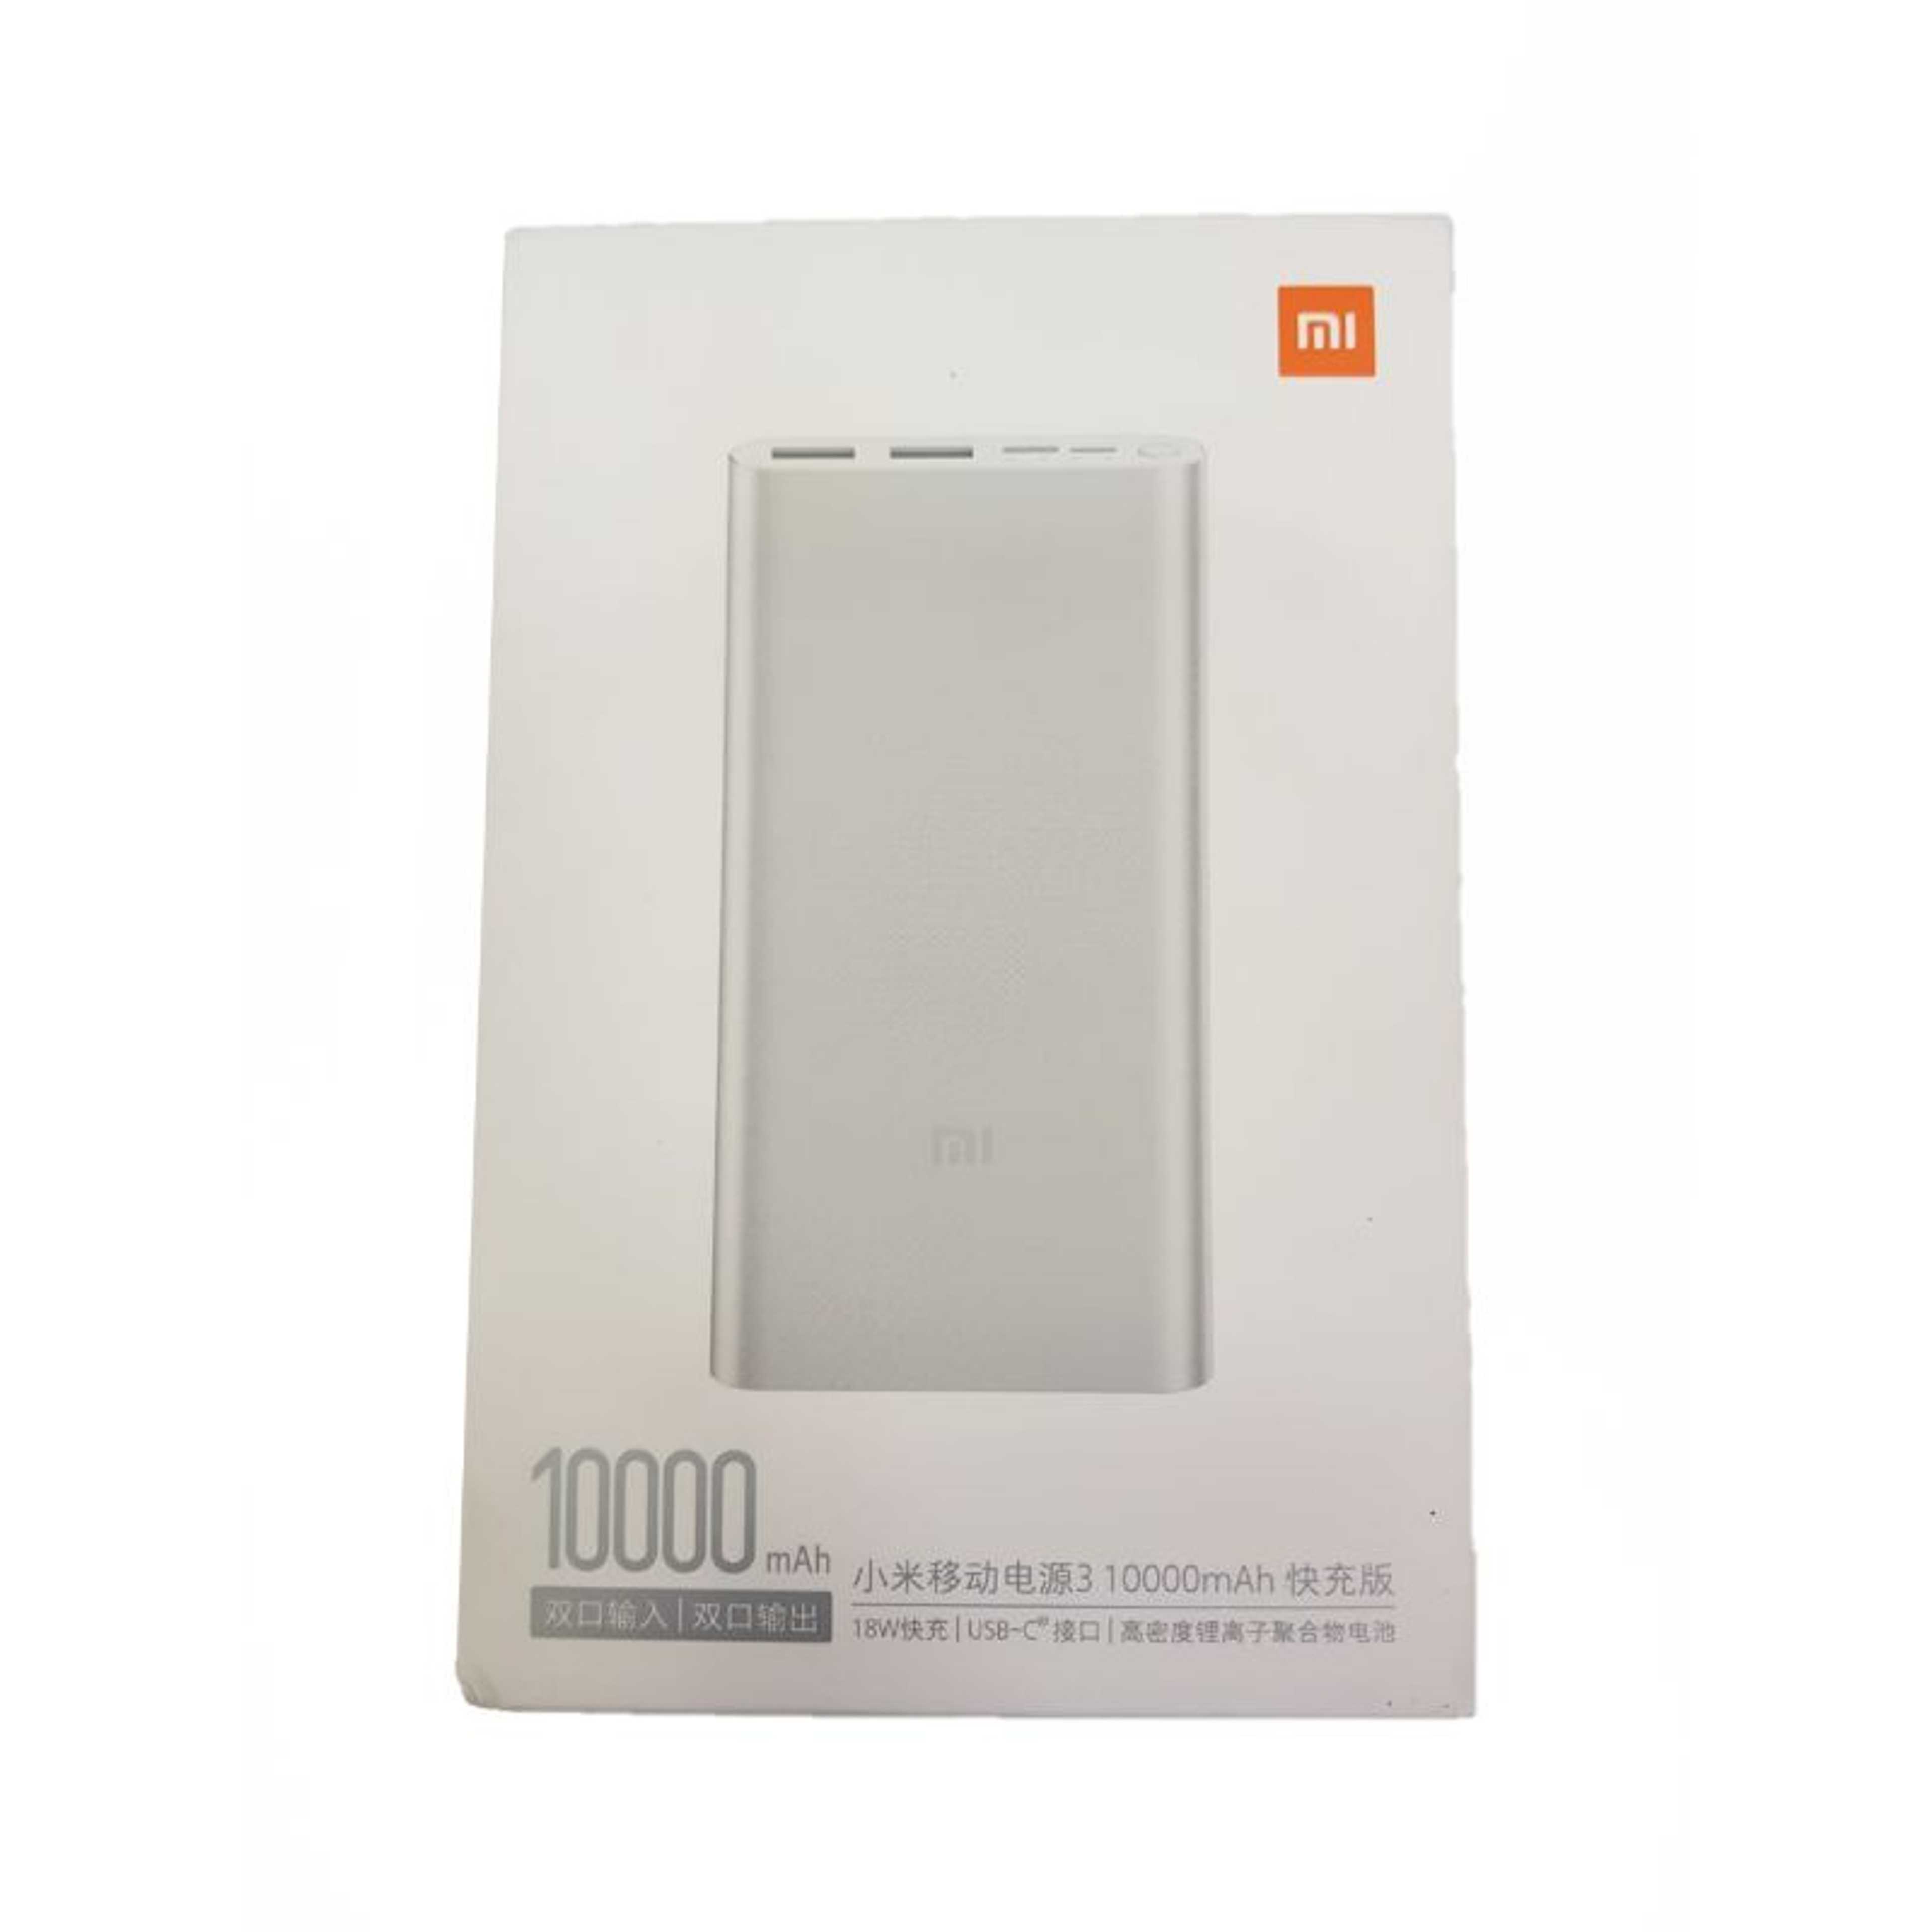 Xiaomi 10000mAh Power Bank